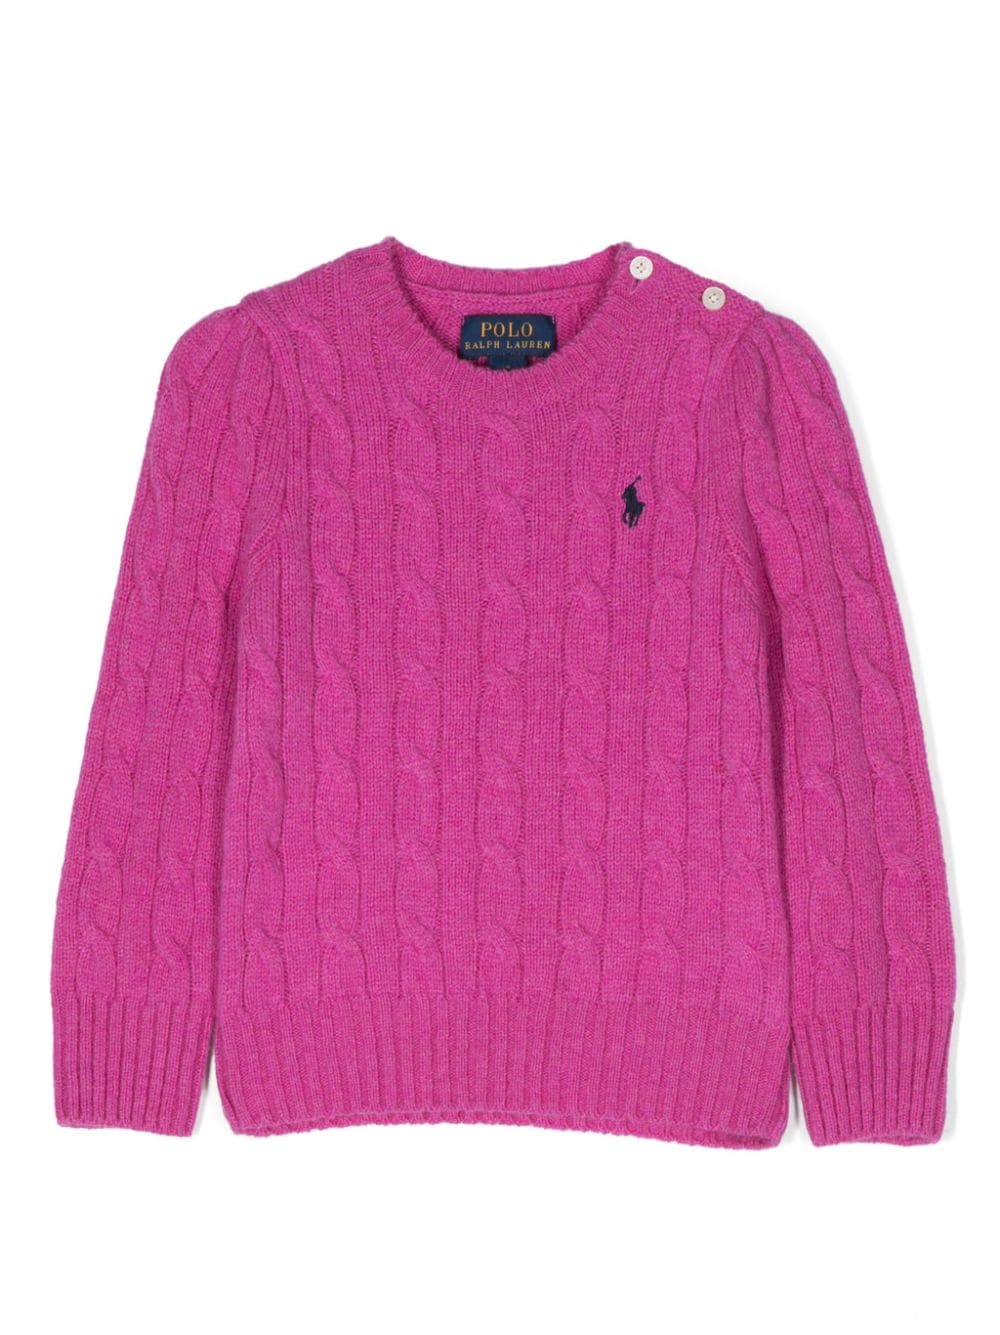 Ralph Lauren Kids Polo Pony cable-knit jumper - Pink von Ralph Lauren Kids